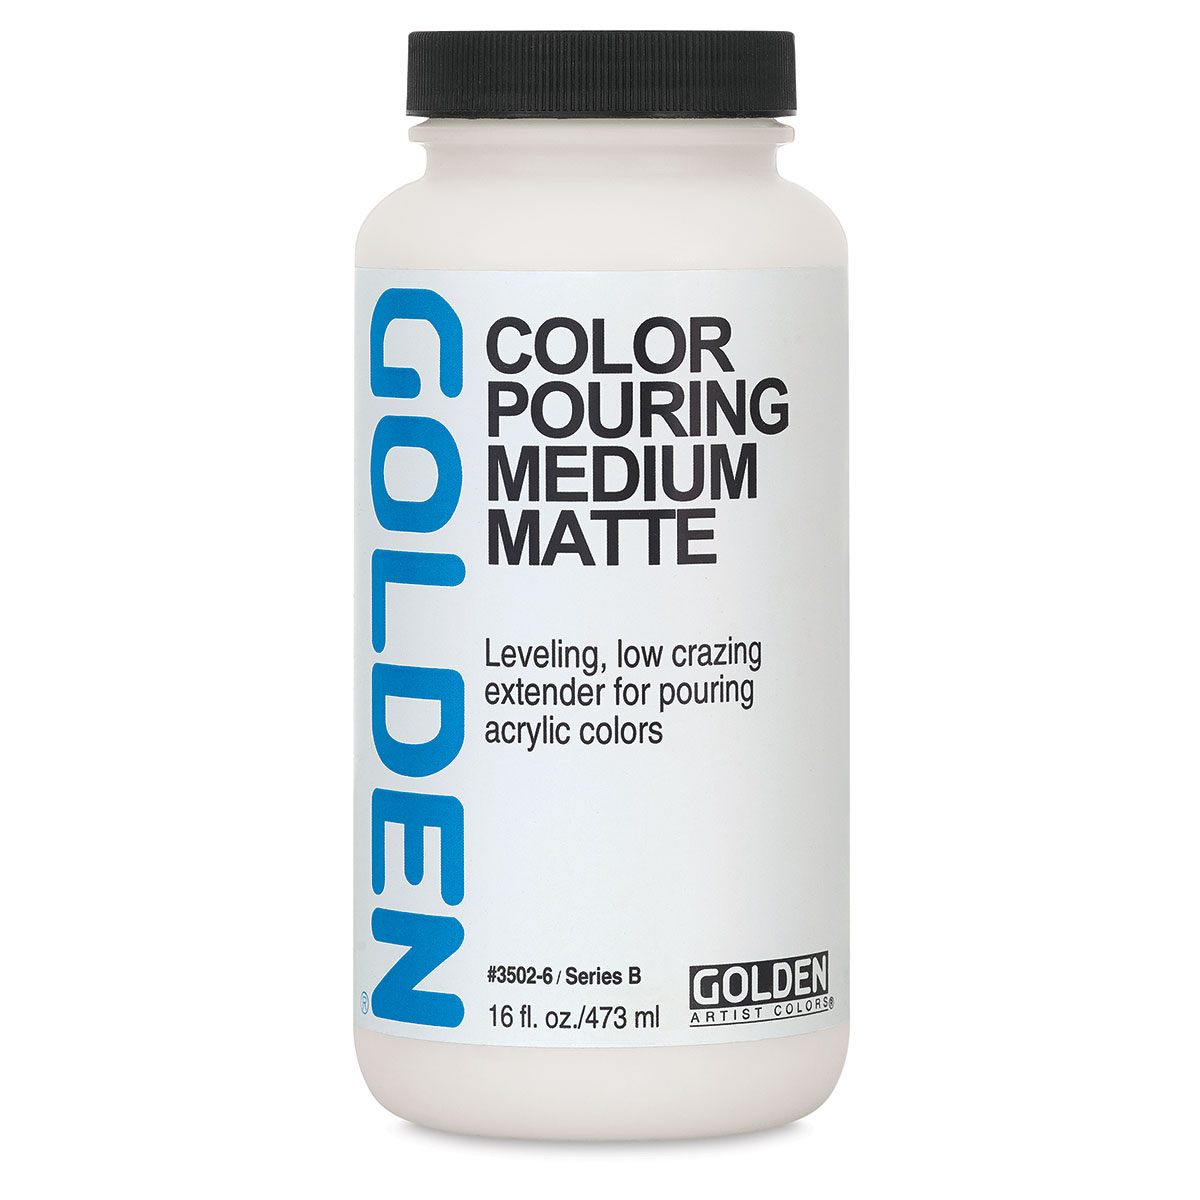 Golden Acrylic Pouring Medium - Matte Color Pouring Set